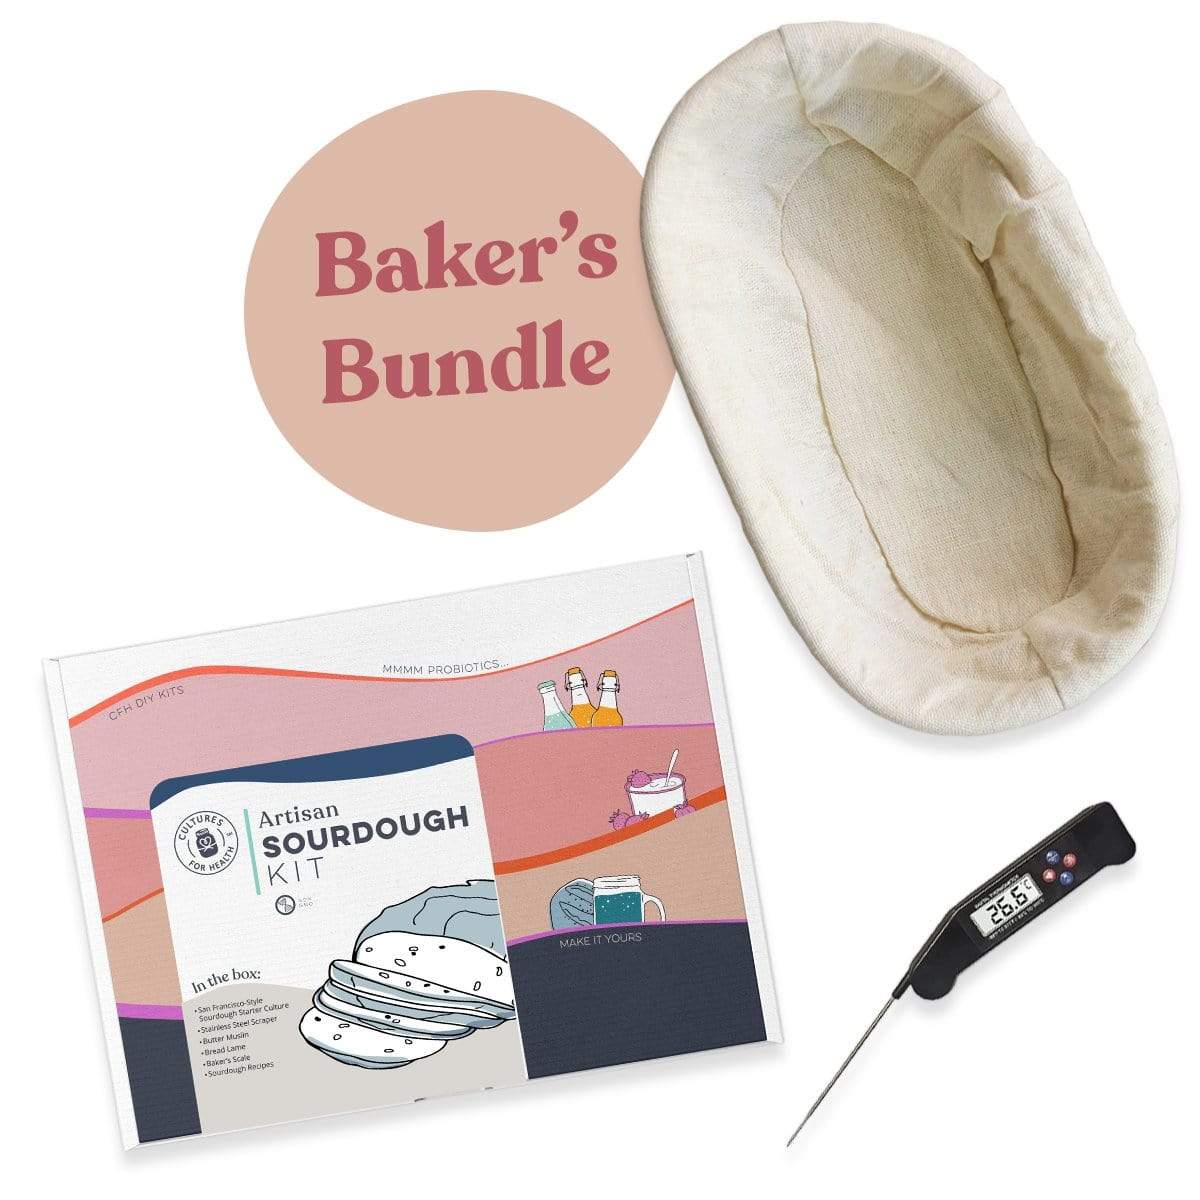 Sourdough Baker's Bundle